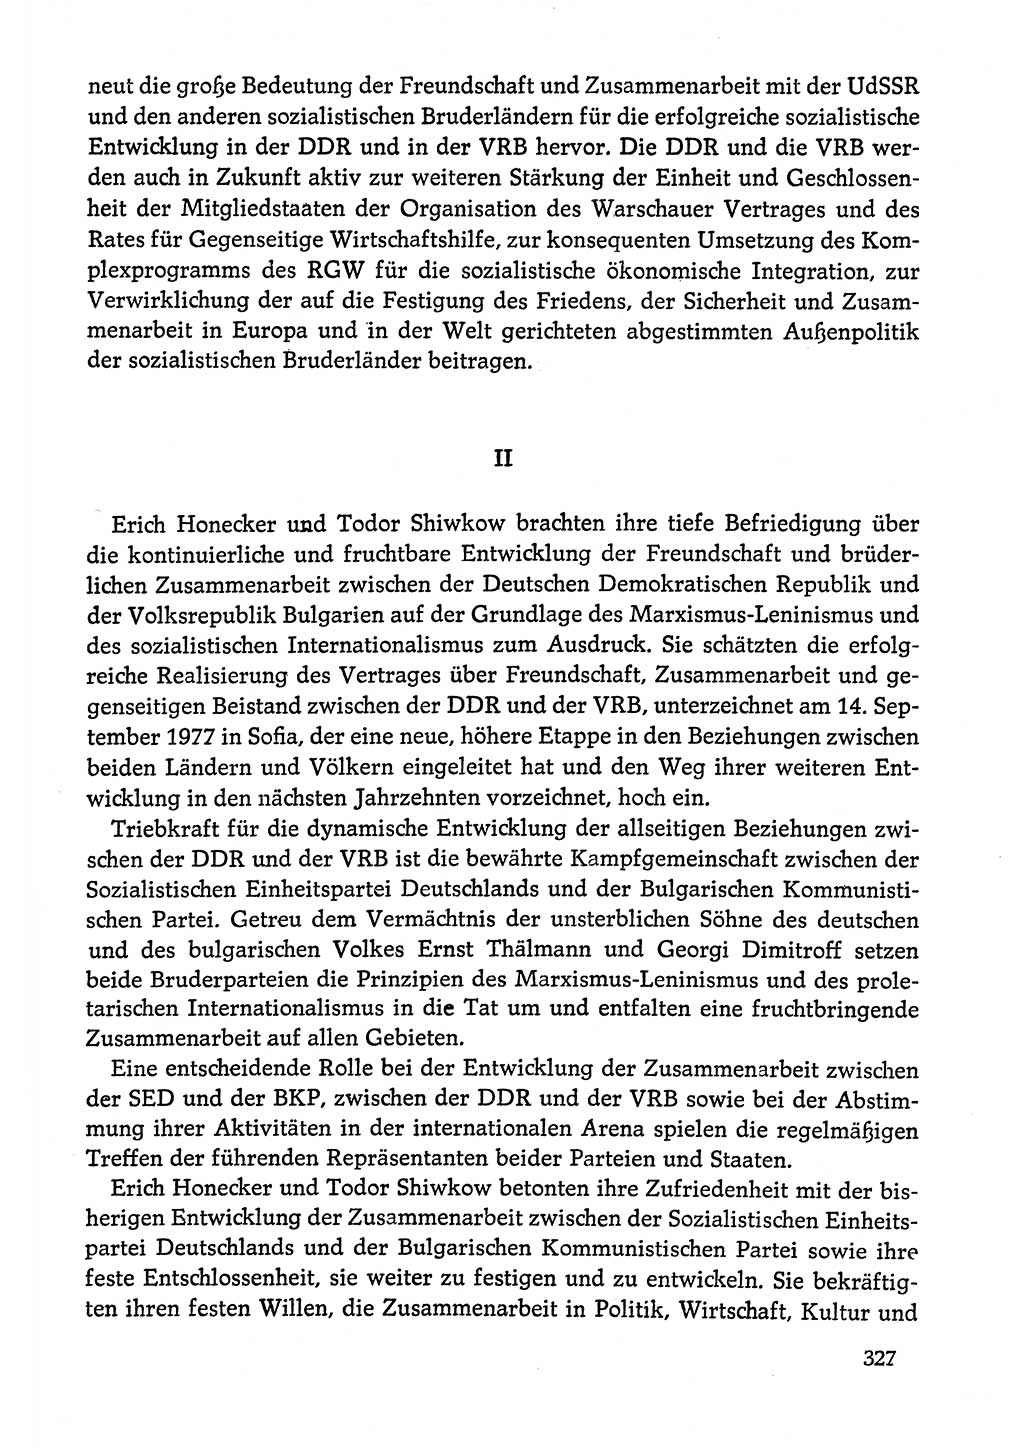 Dokumente der Sozialistischen Einheitspartei Deutschlands (SED) [Deutsche Demokratische Republik (DDR)] 1978-1979, Seite 327 (Dok. SED DDR 1978-1979, S. 327)